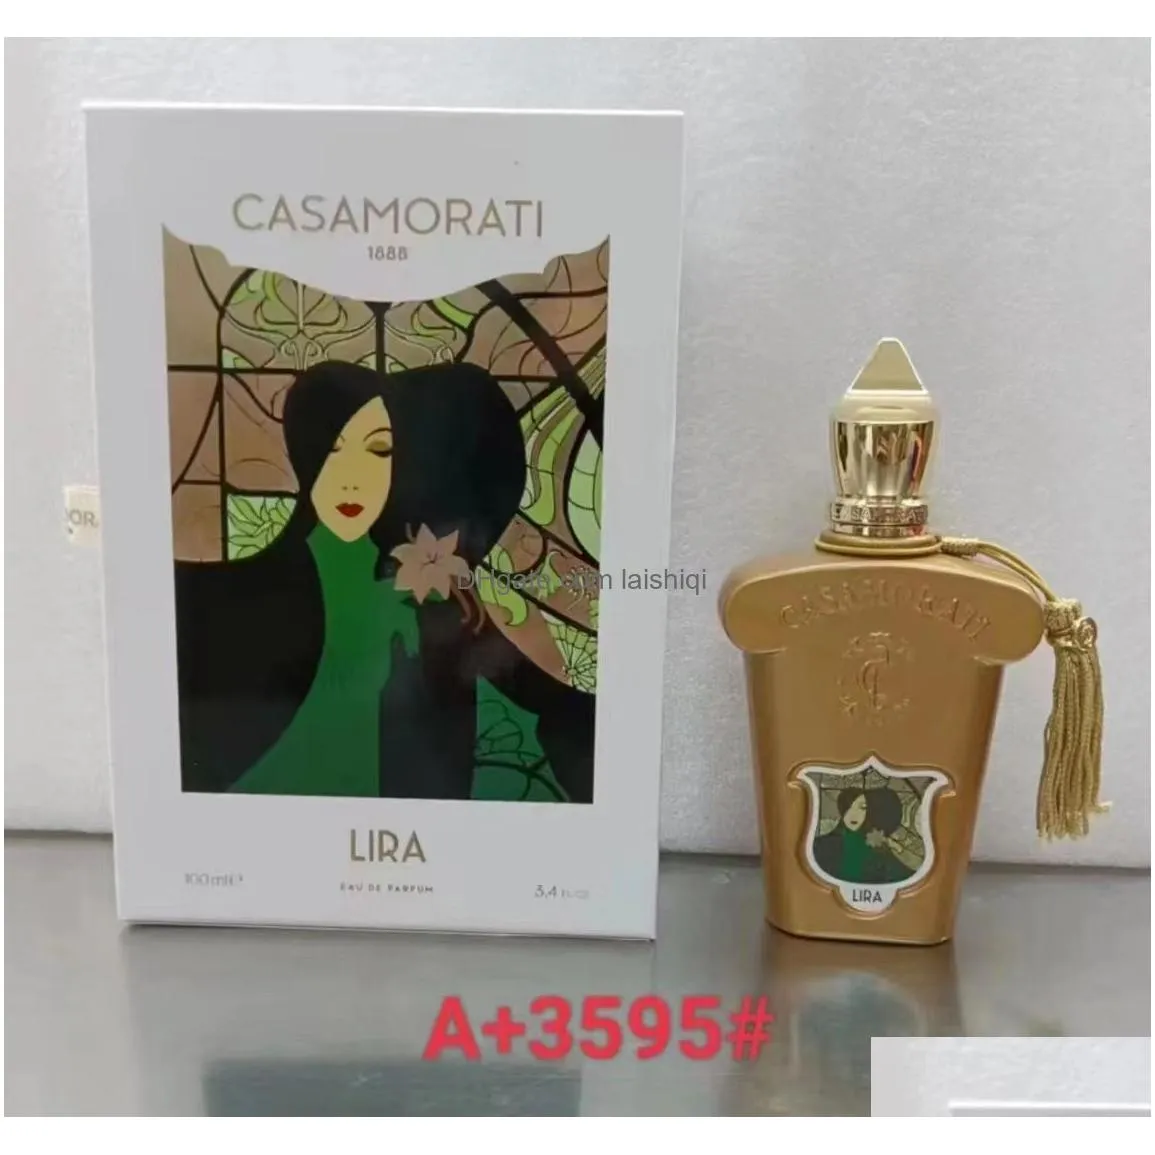 brand xerjoff v coro fragrance verde accento edp luxuries designer cologne perfume for women lady girls 90ml parfum spray body mist